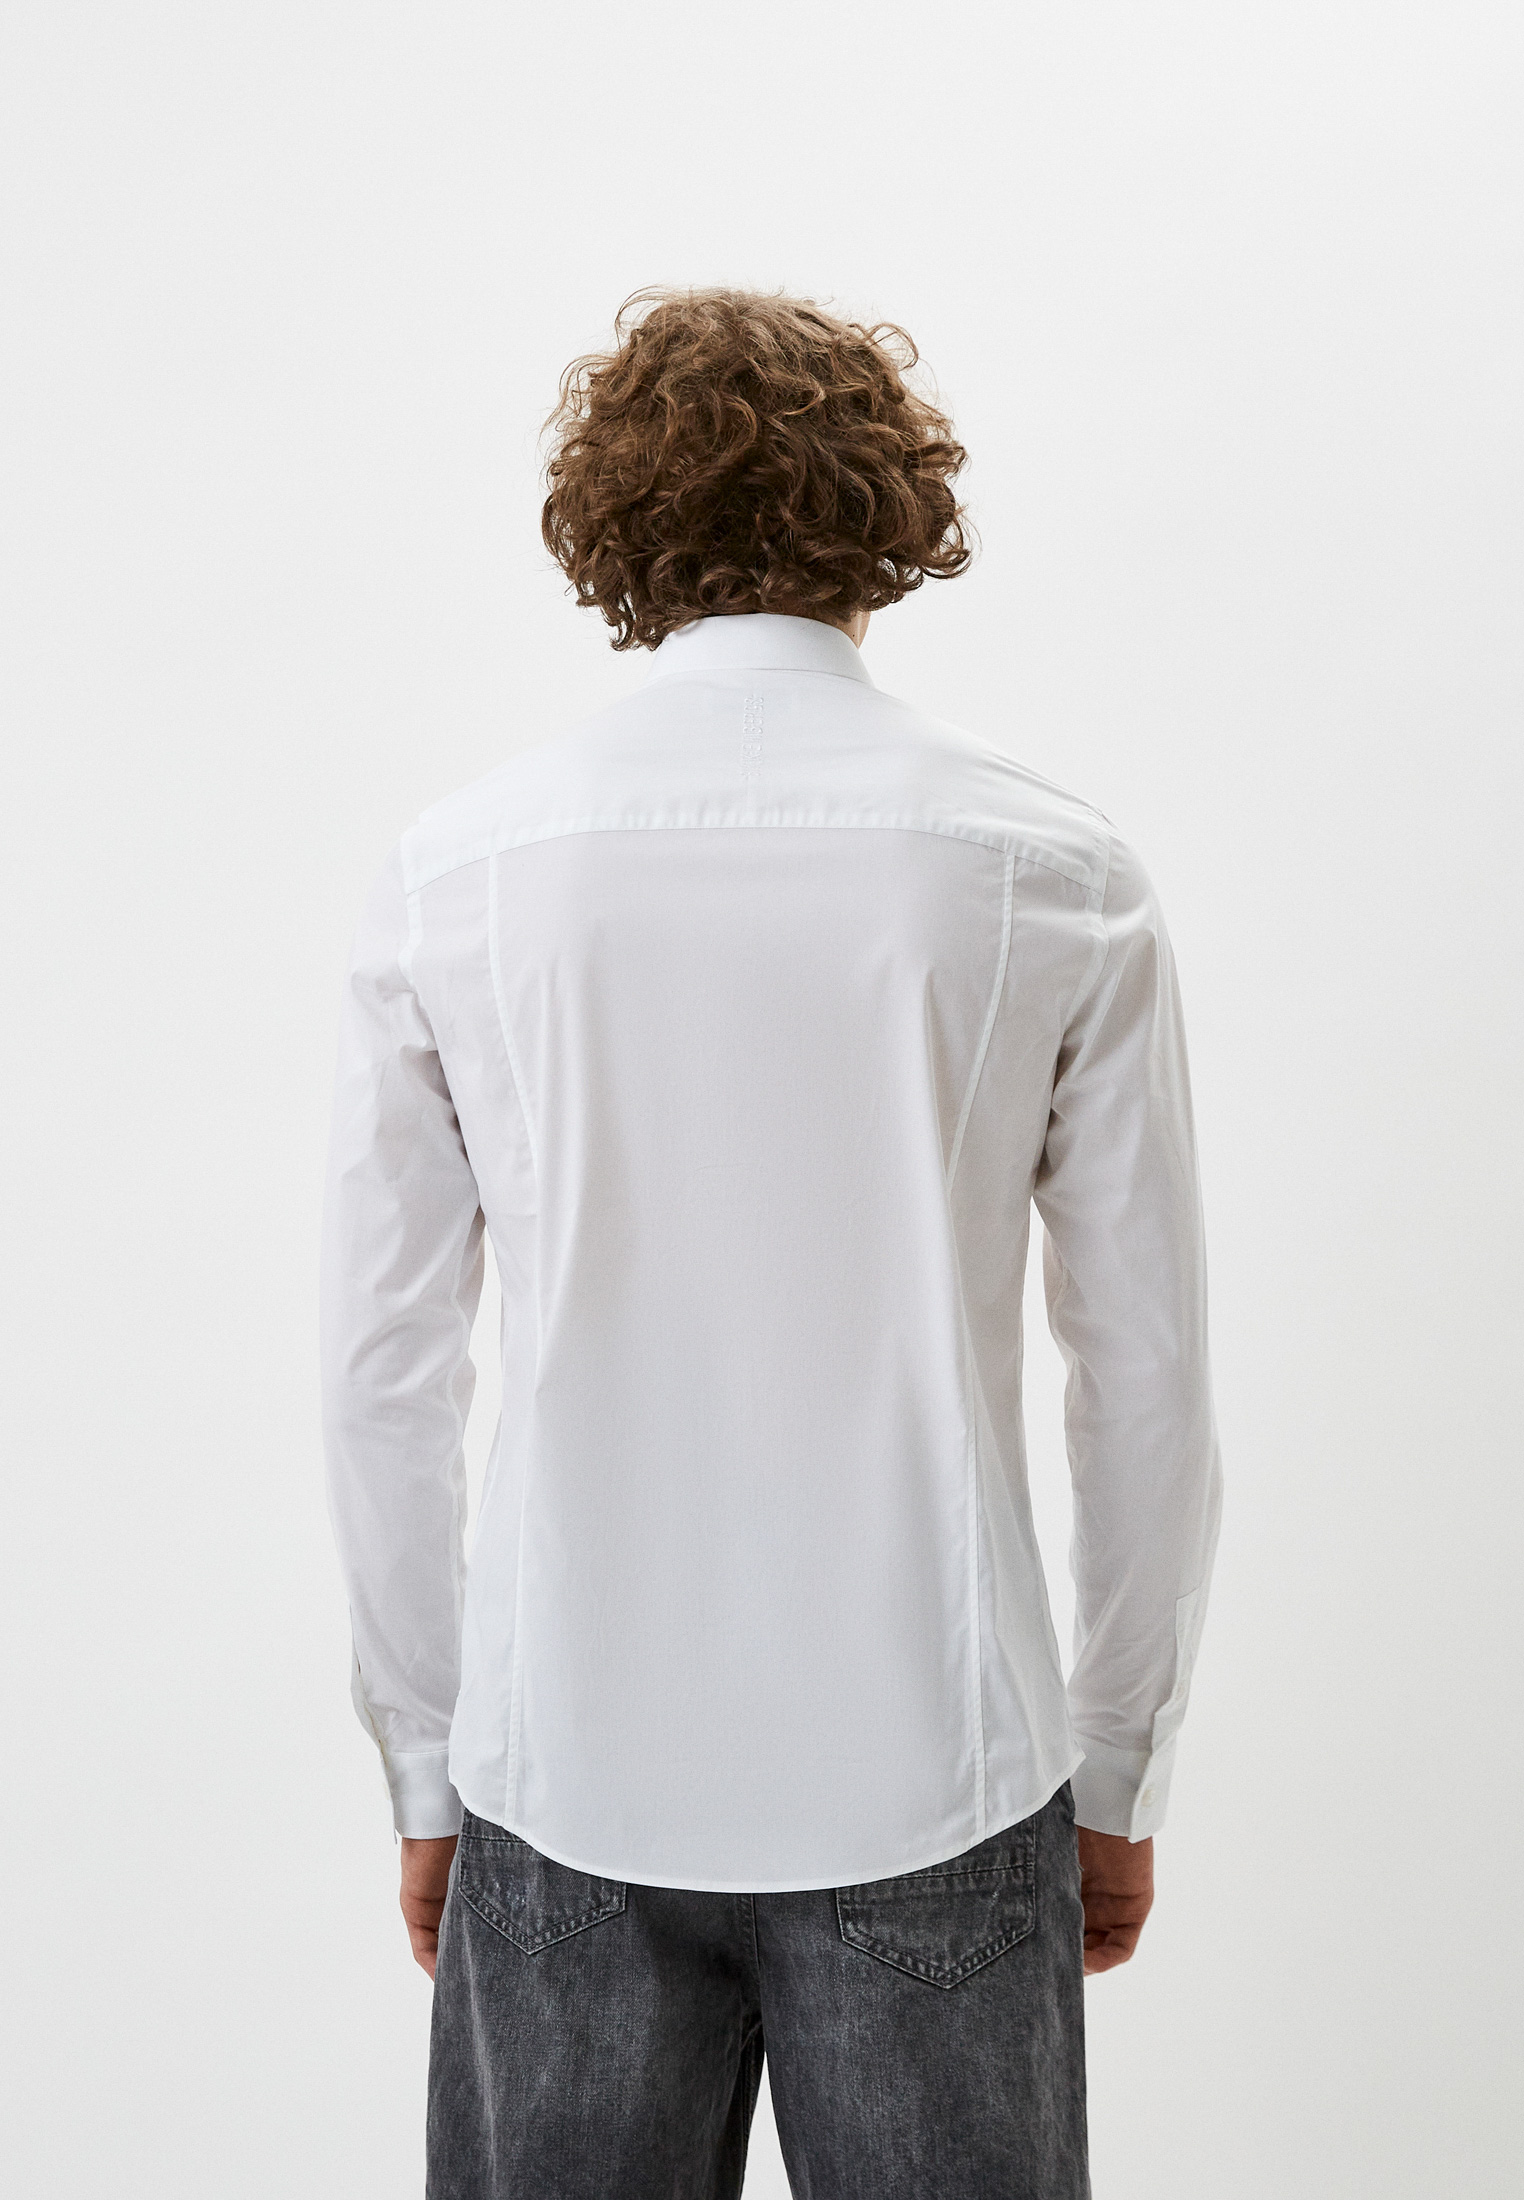 Рубашка с длинным рукавом Bikkembergs (Биккембергс) C C 009 04 S 2931: изображение 3